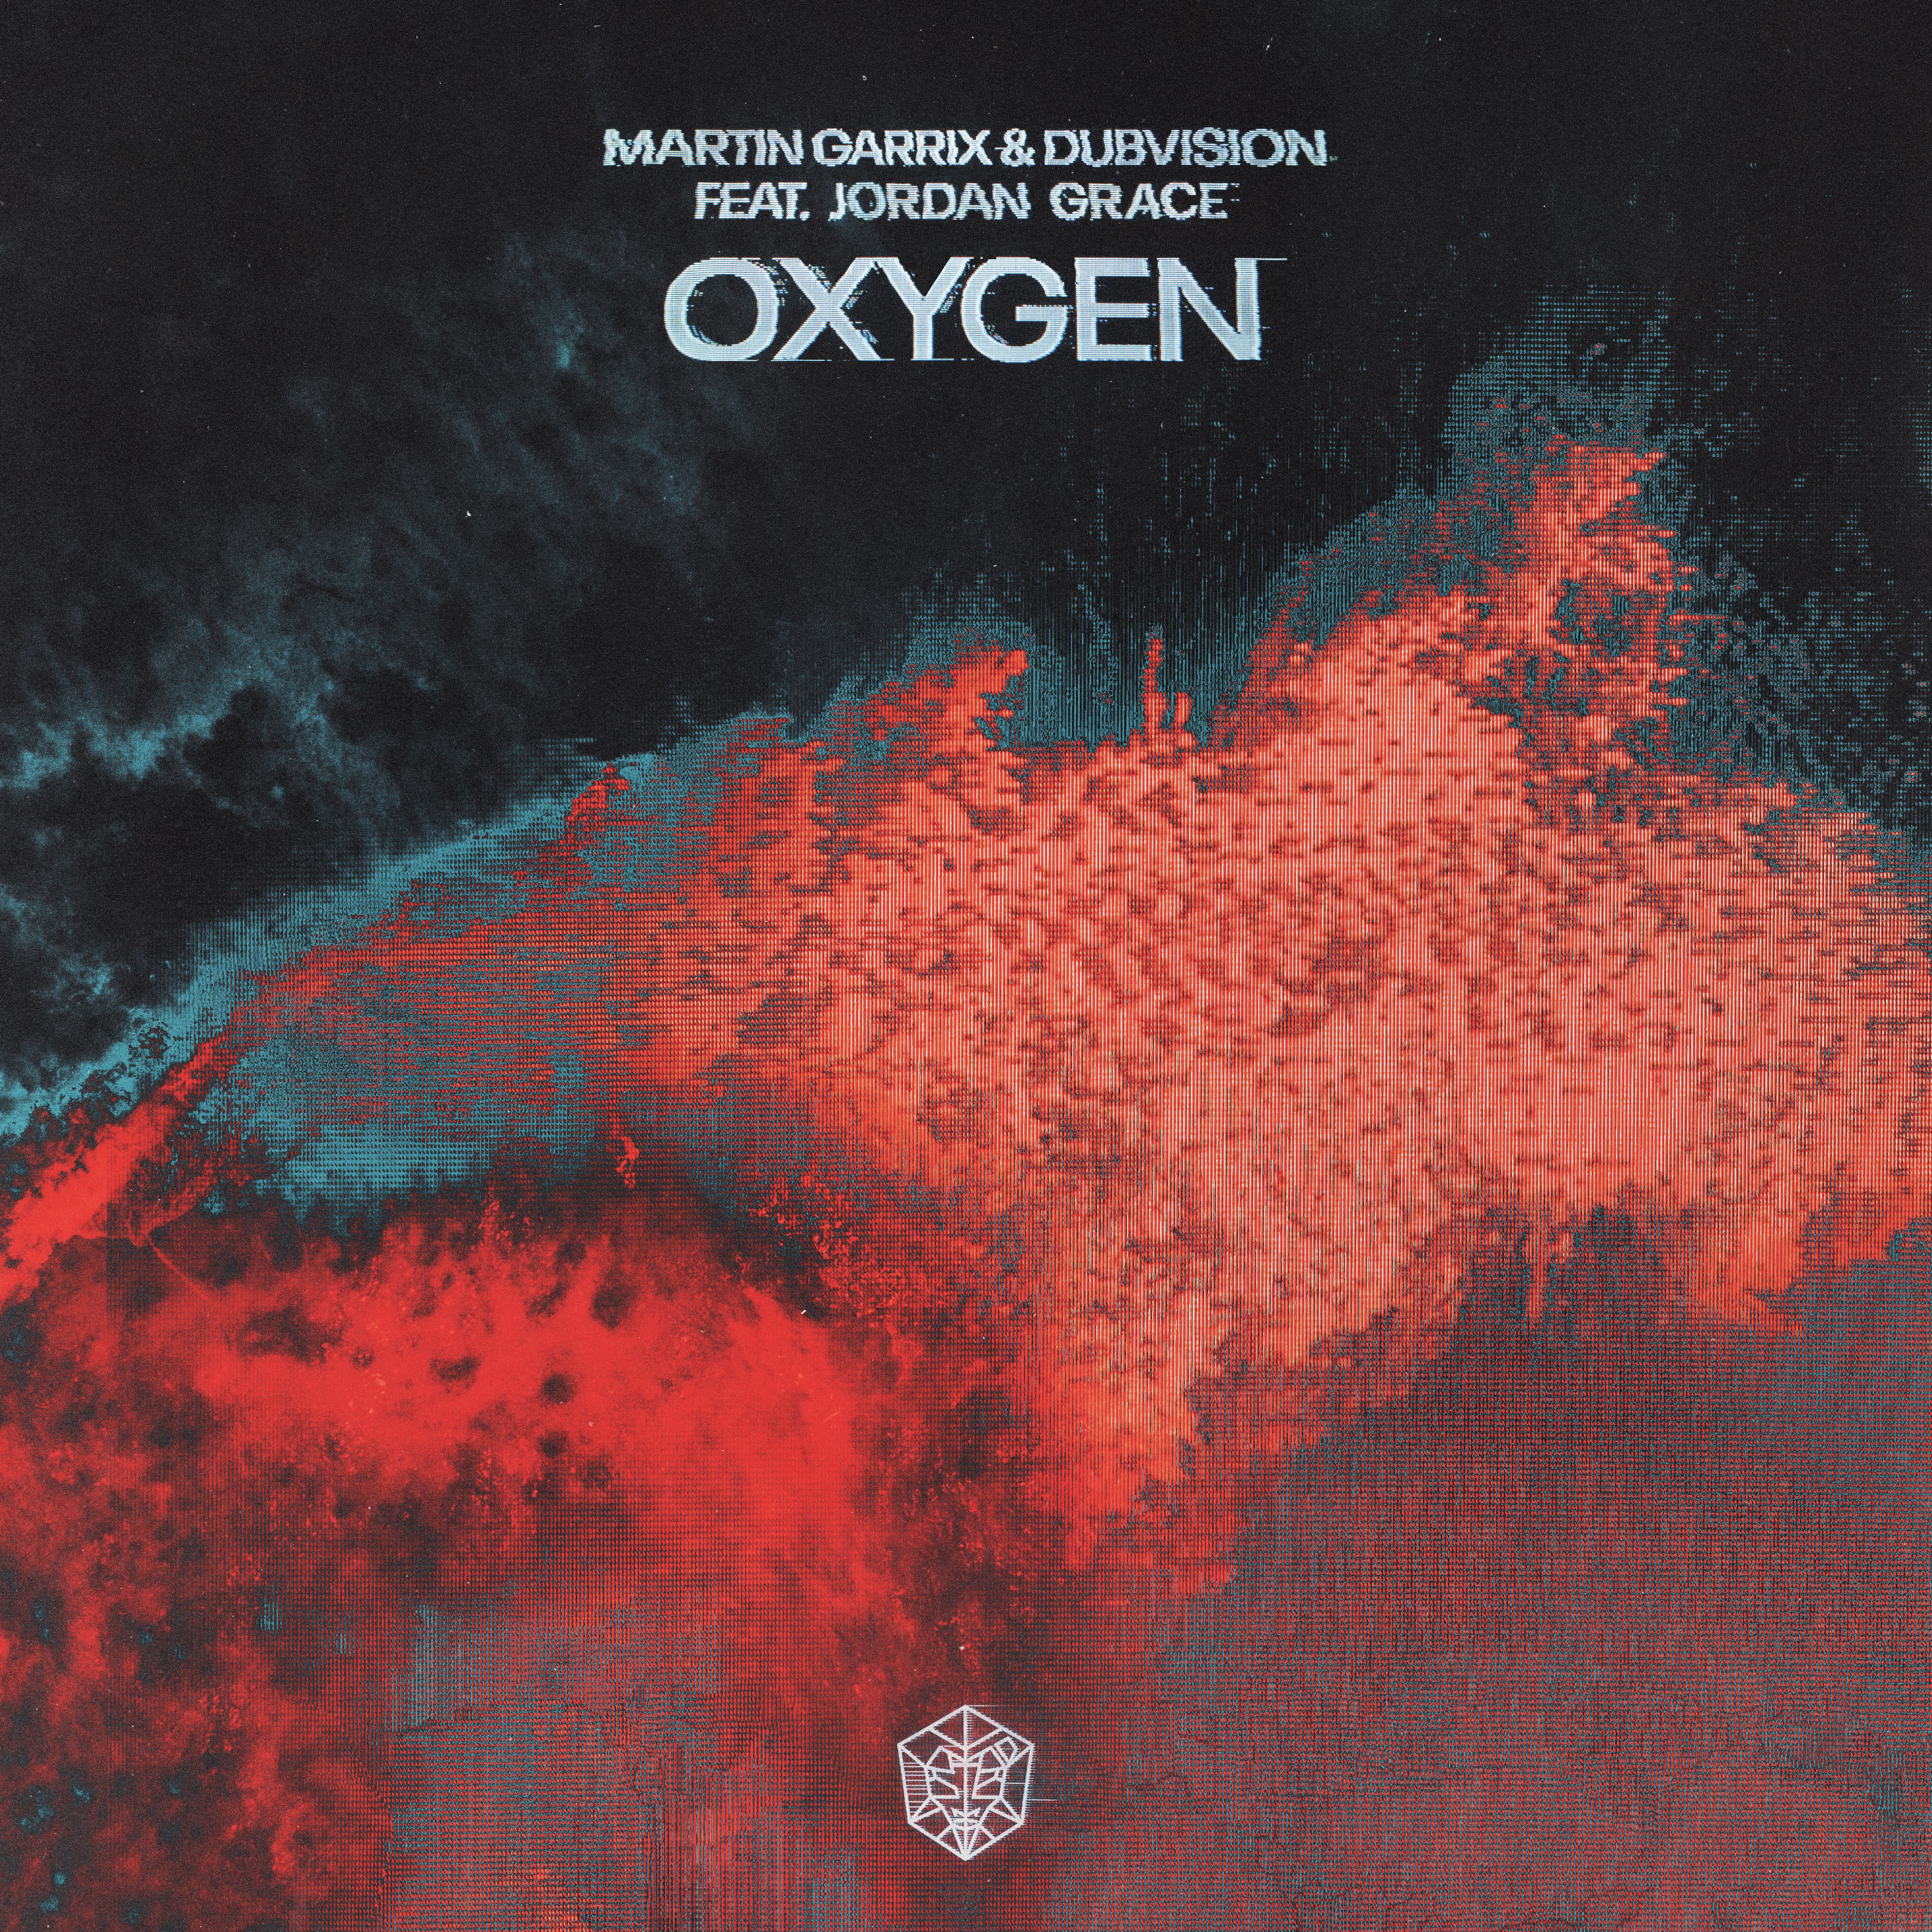 Martin Garrix & DubVision featuring Jordan Grace — Oxygen cover artwork